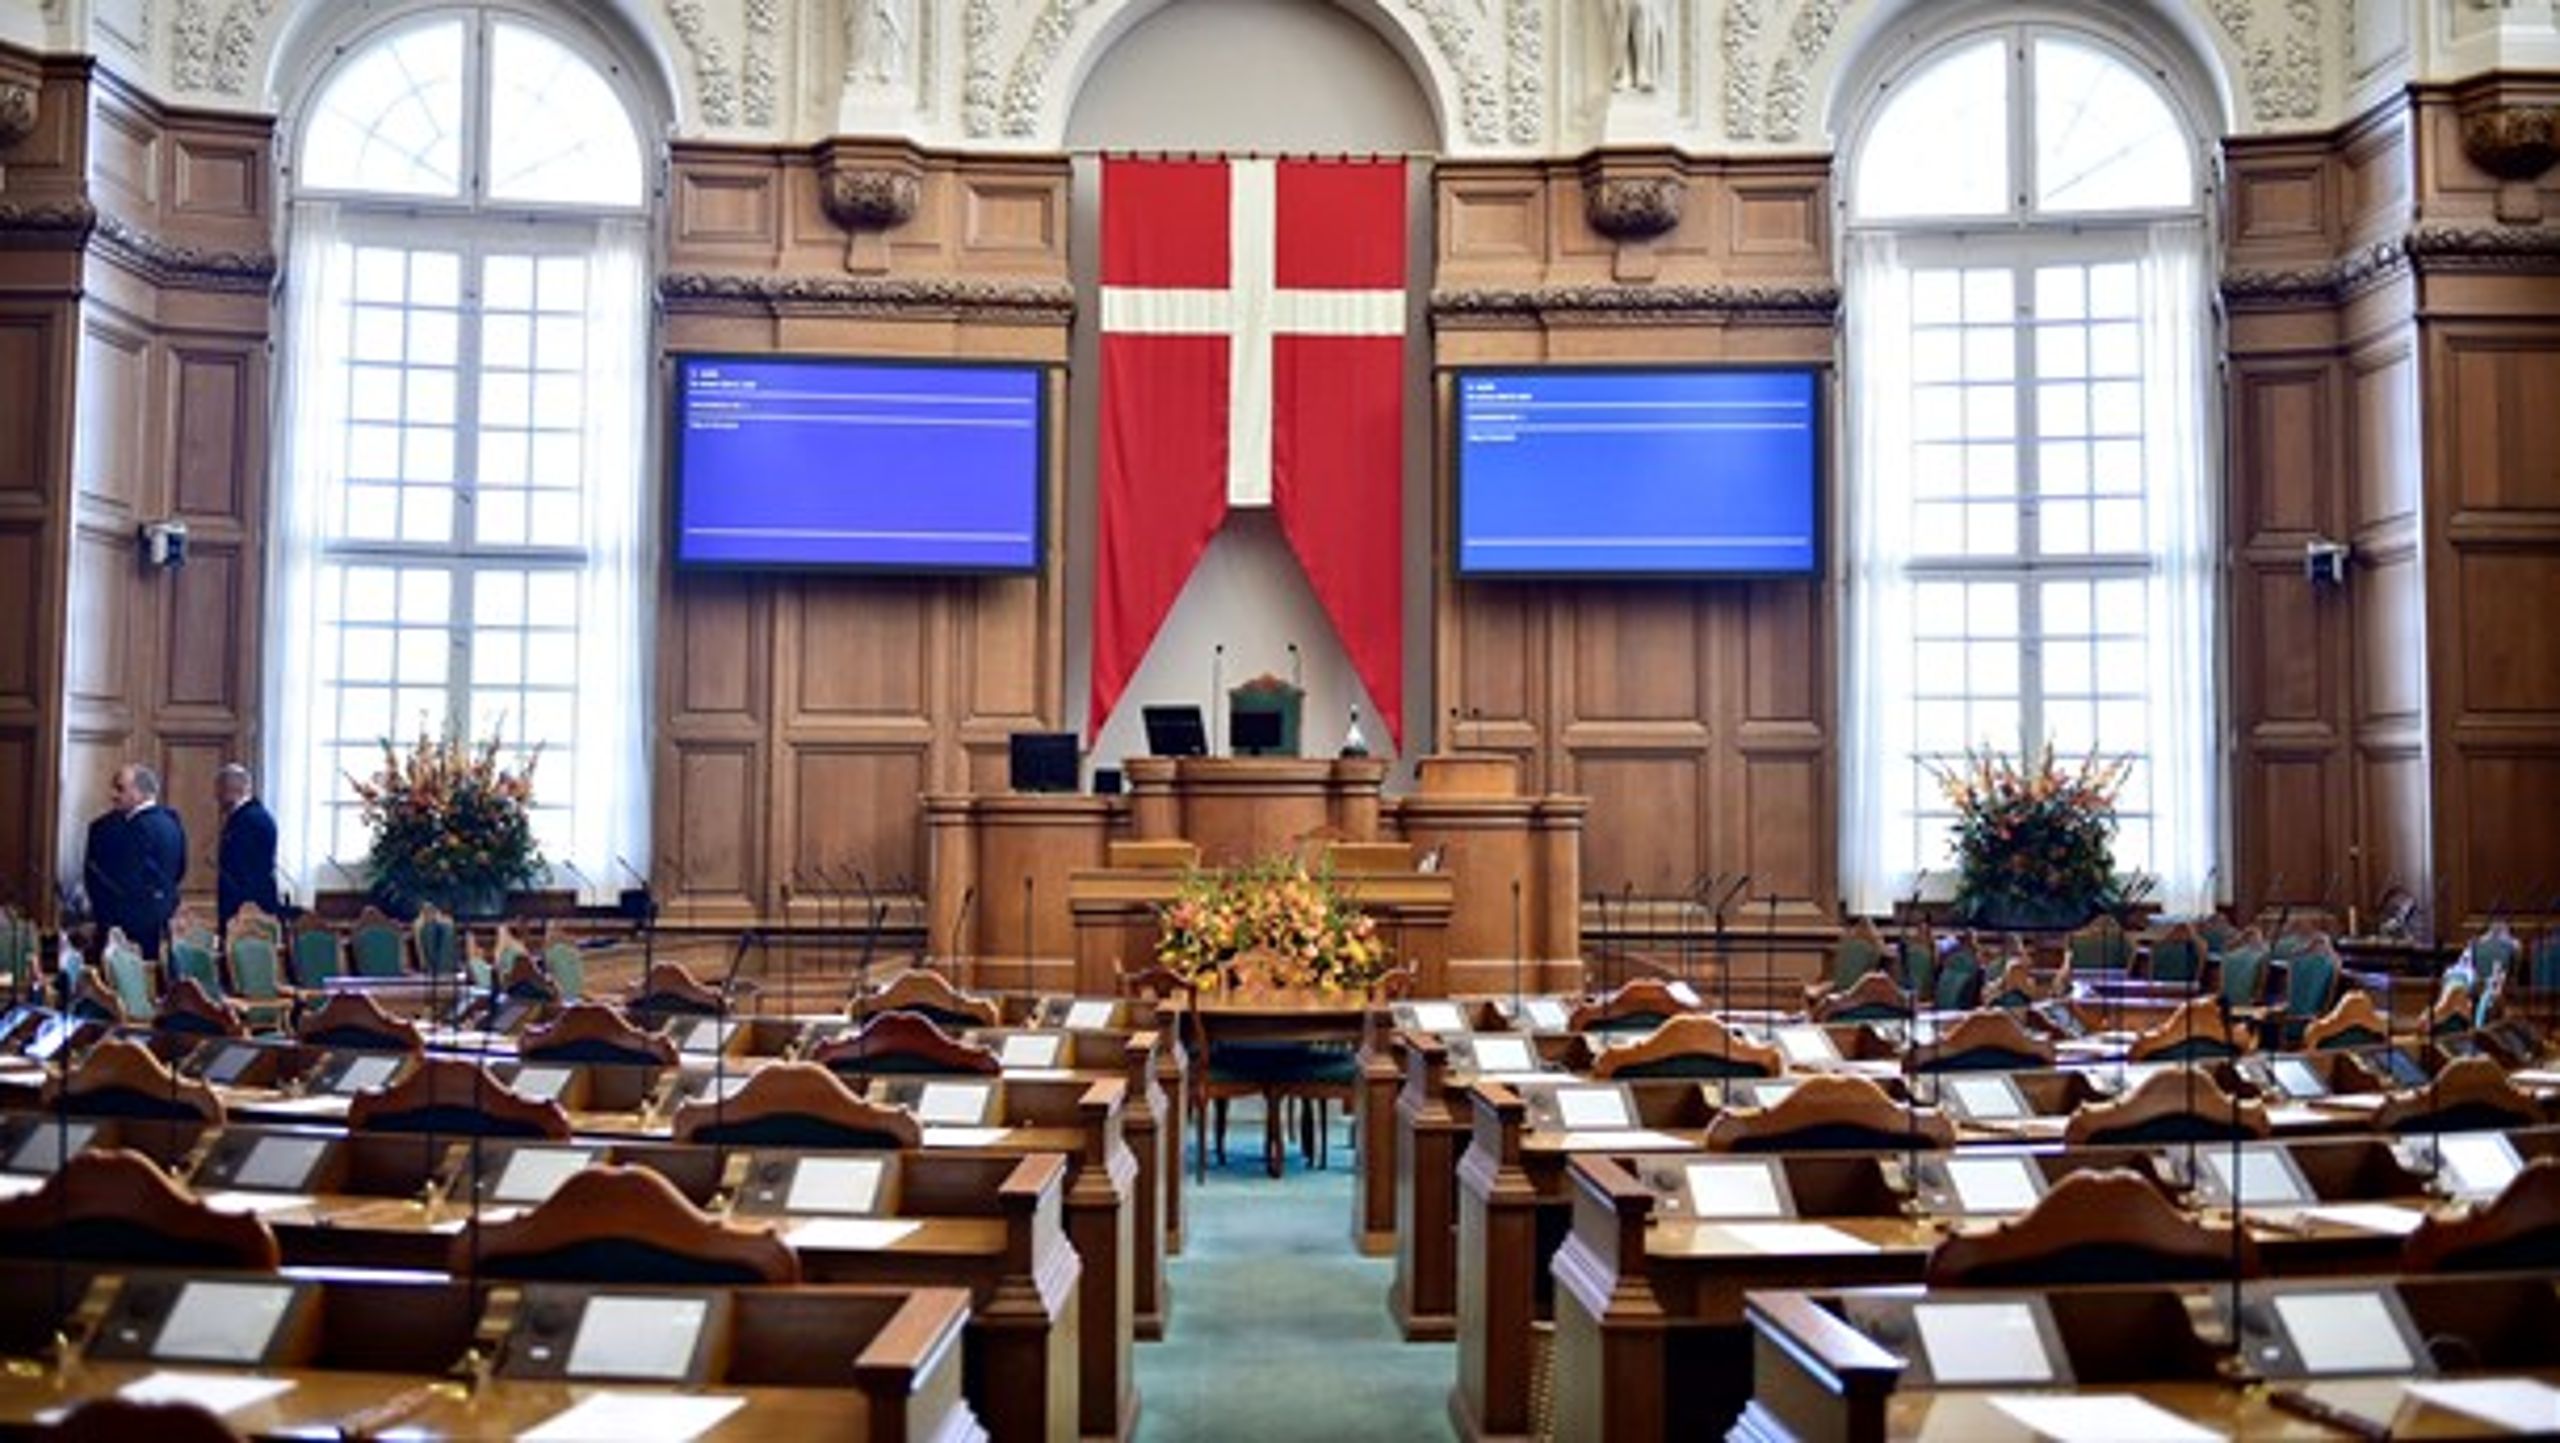 Ramaskrig over Dannebrog i Folketingssalen bidrager til følelsen af, at dansk kultur er under pres, skriver Ida Auken.